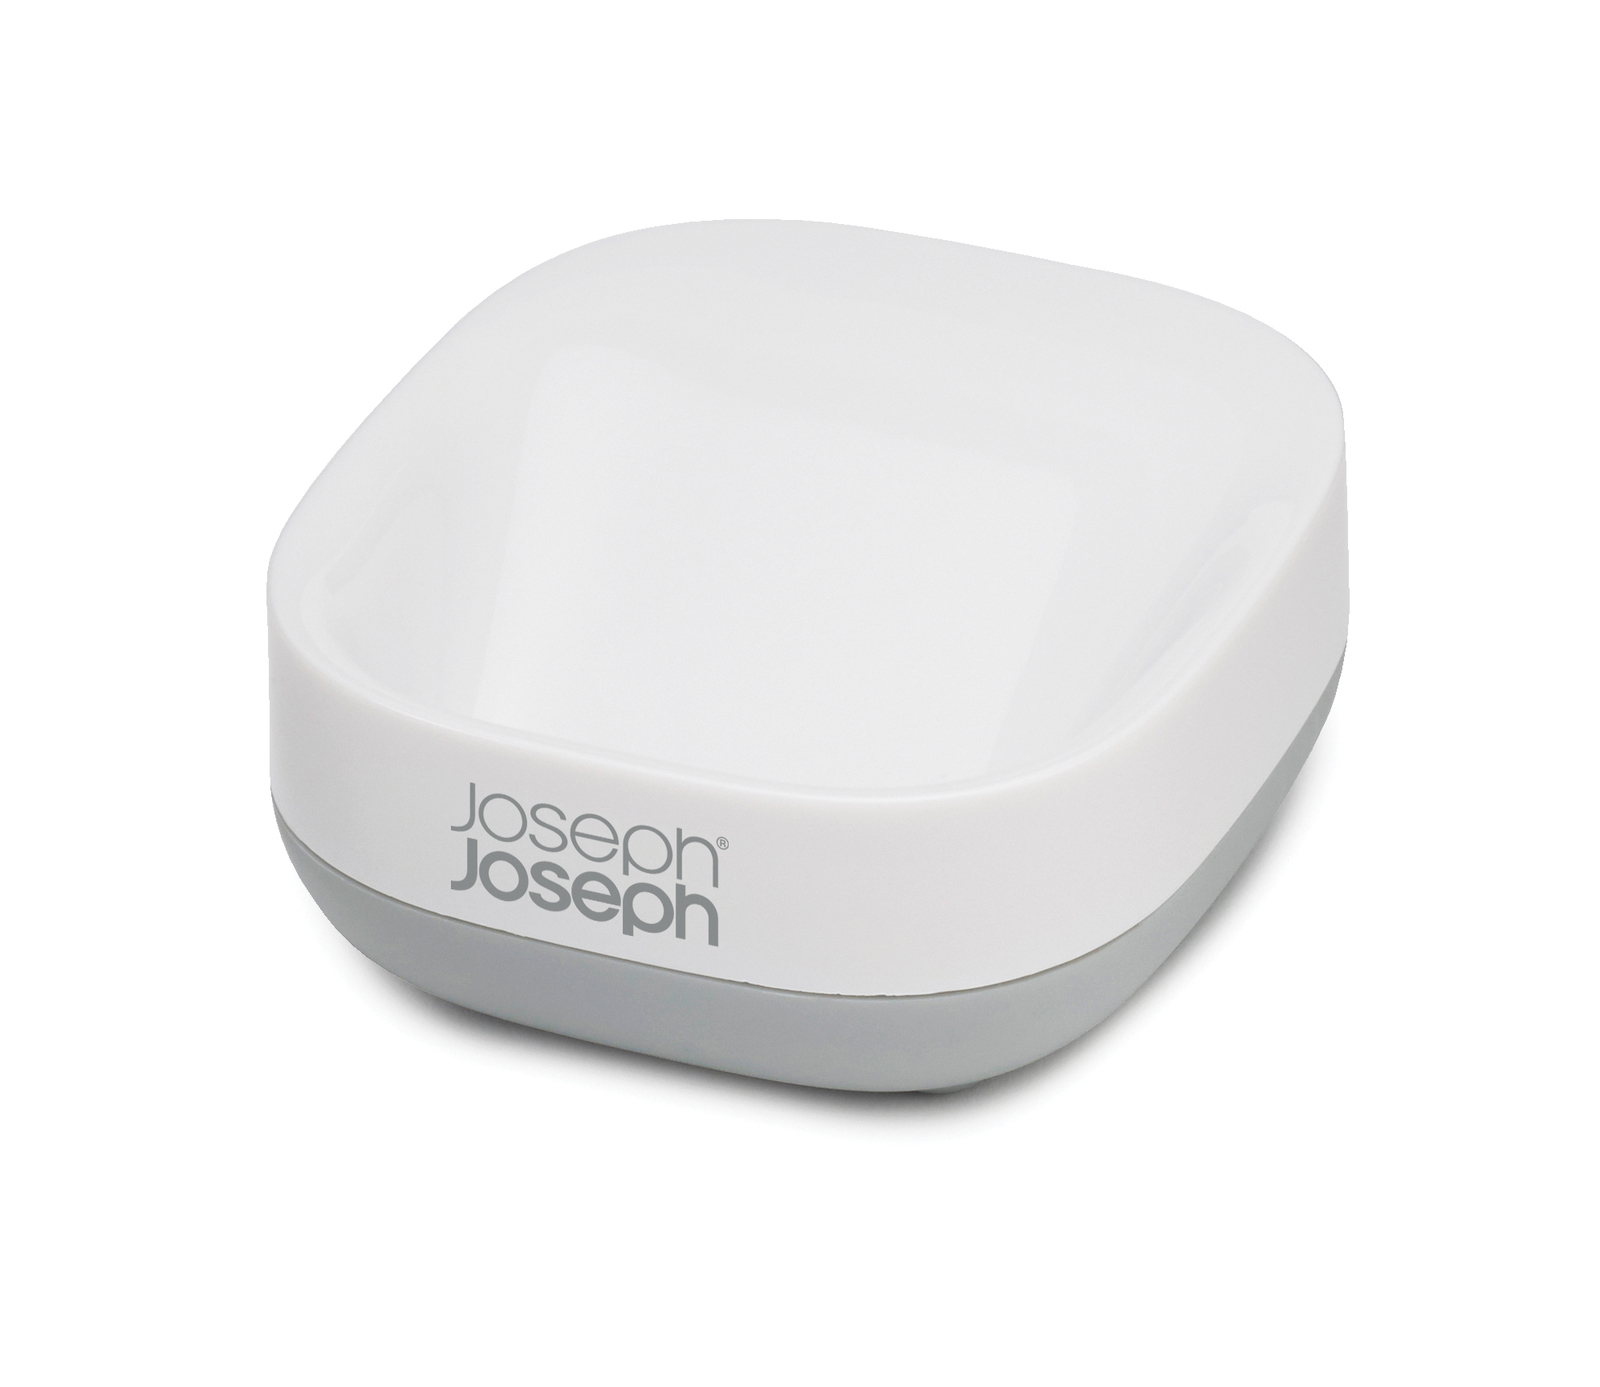 Joseph Joseph - Khay đựng xà phòng cao cấp Slim Compact Soap Dish 705119